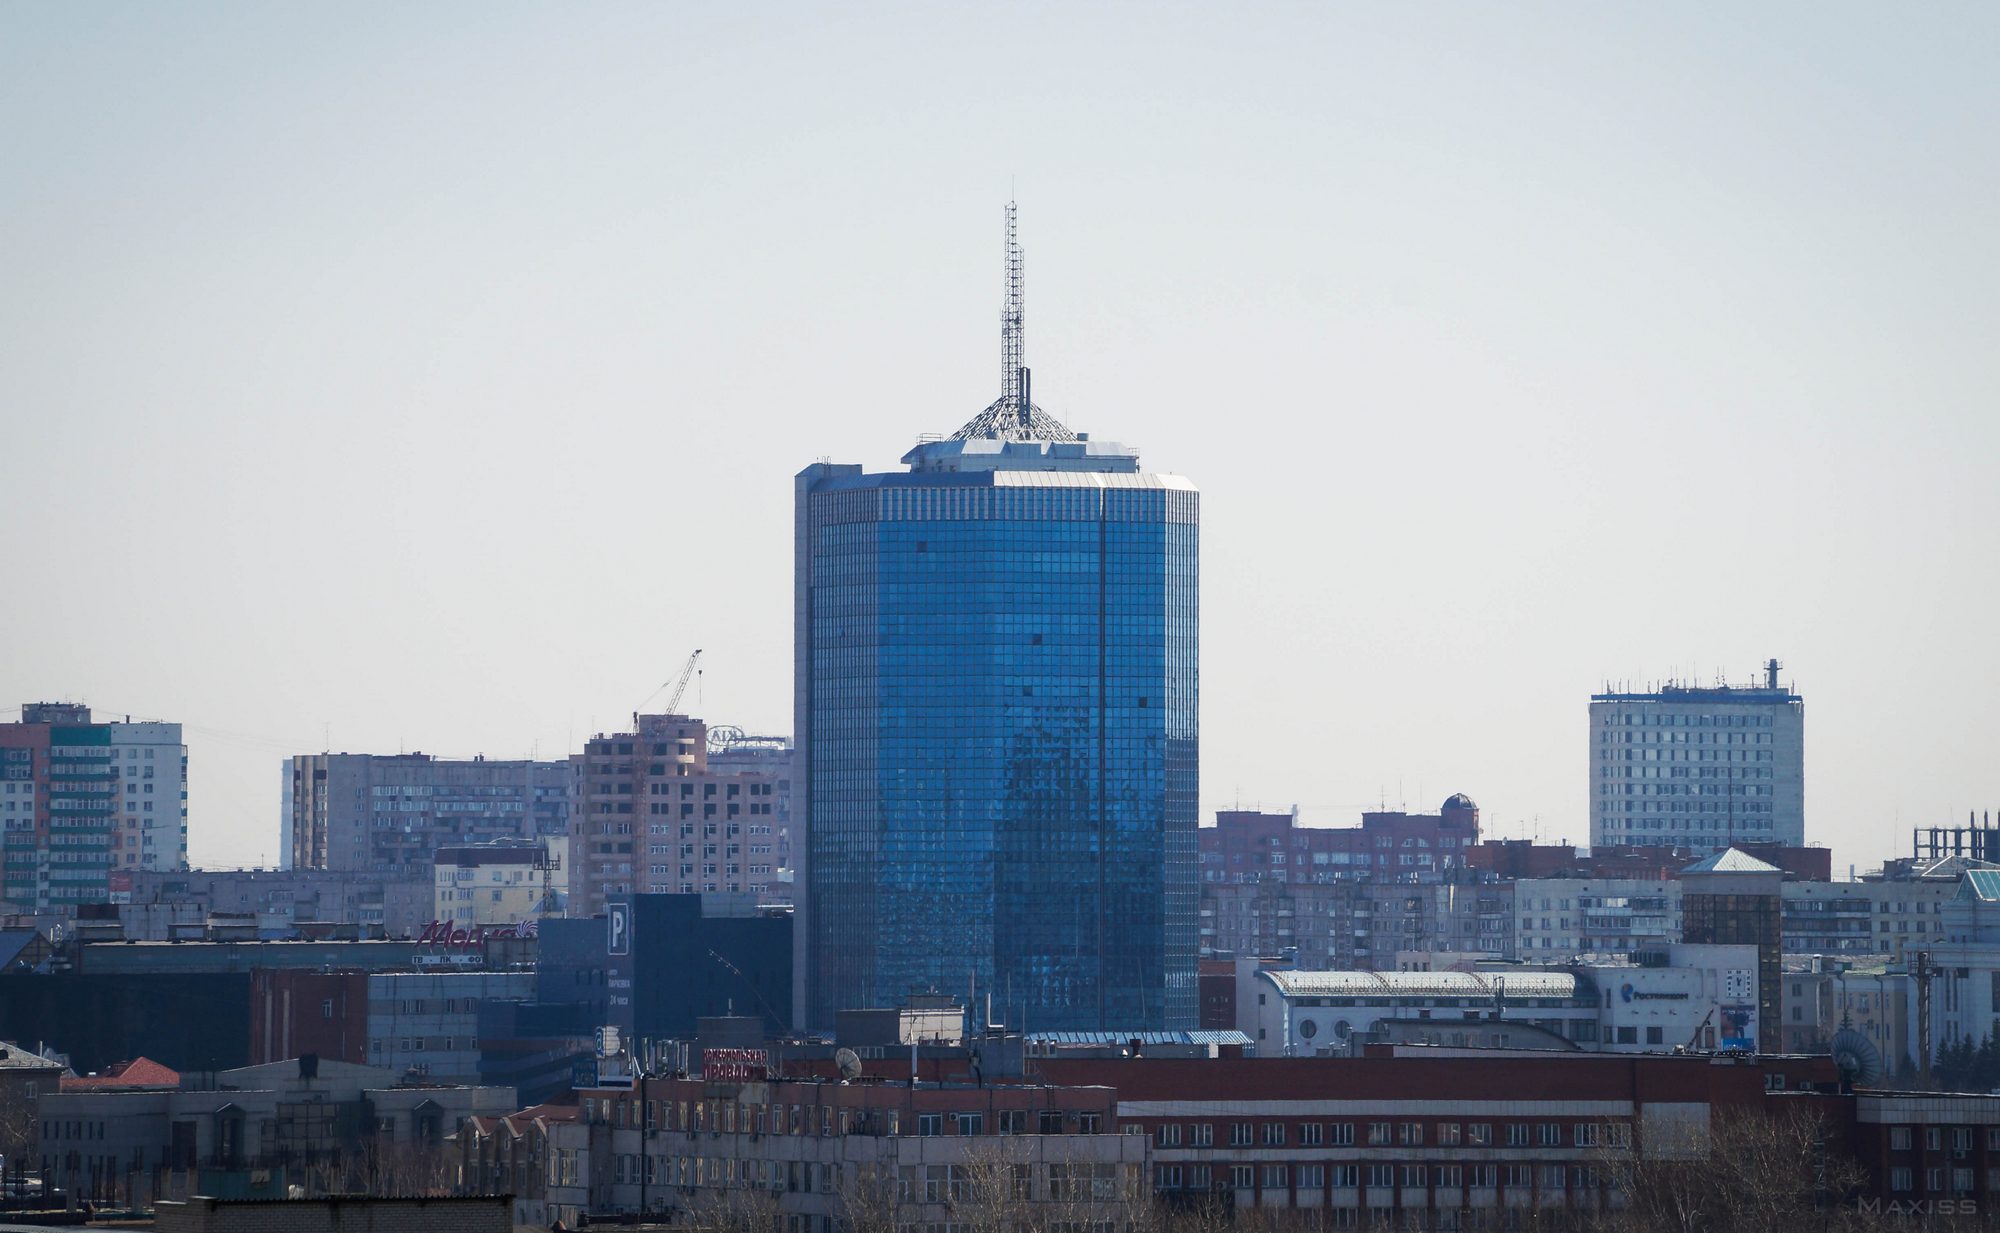 111-метровый офисный центр Челябинск-Сити — самое высокое здание Челябинска